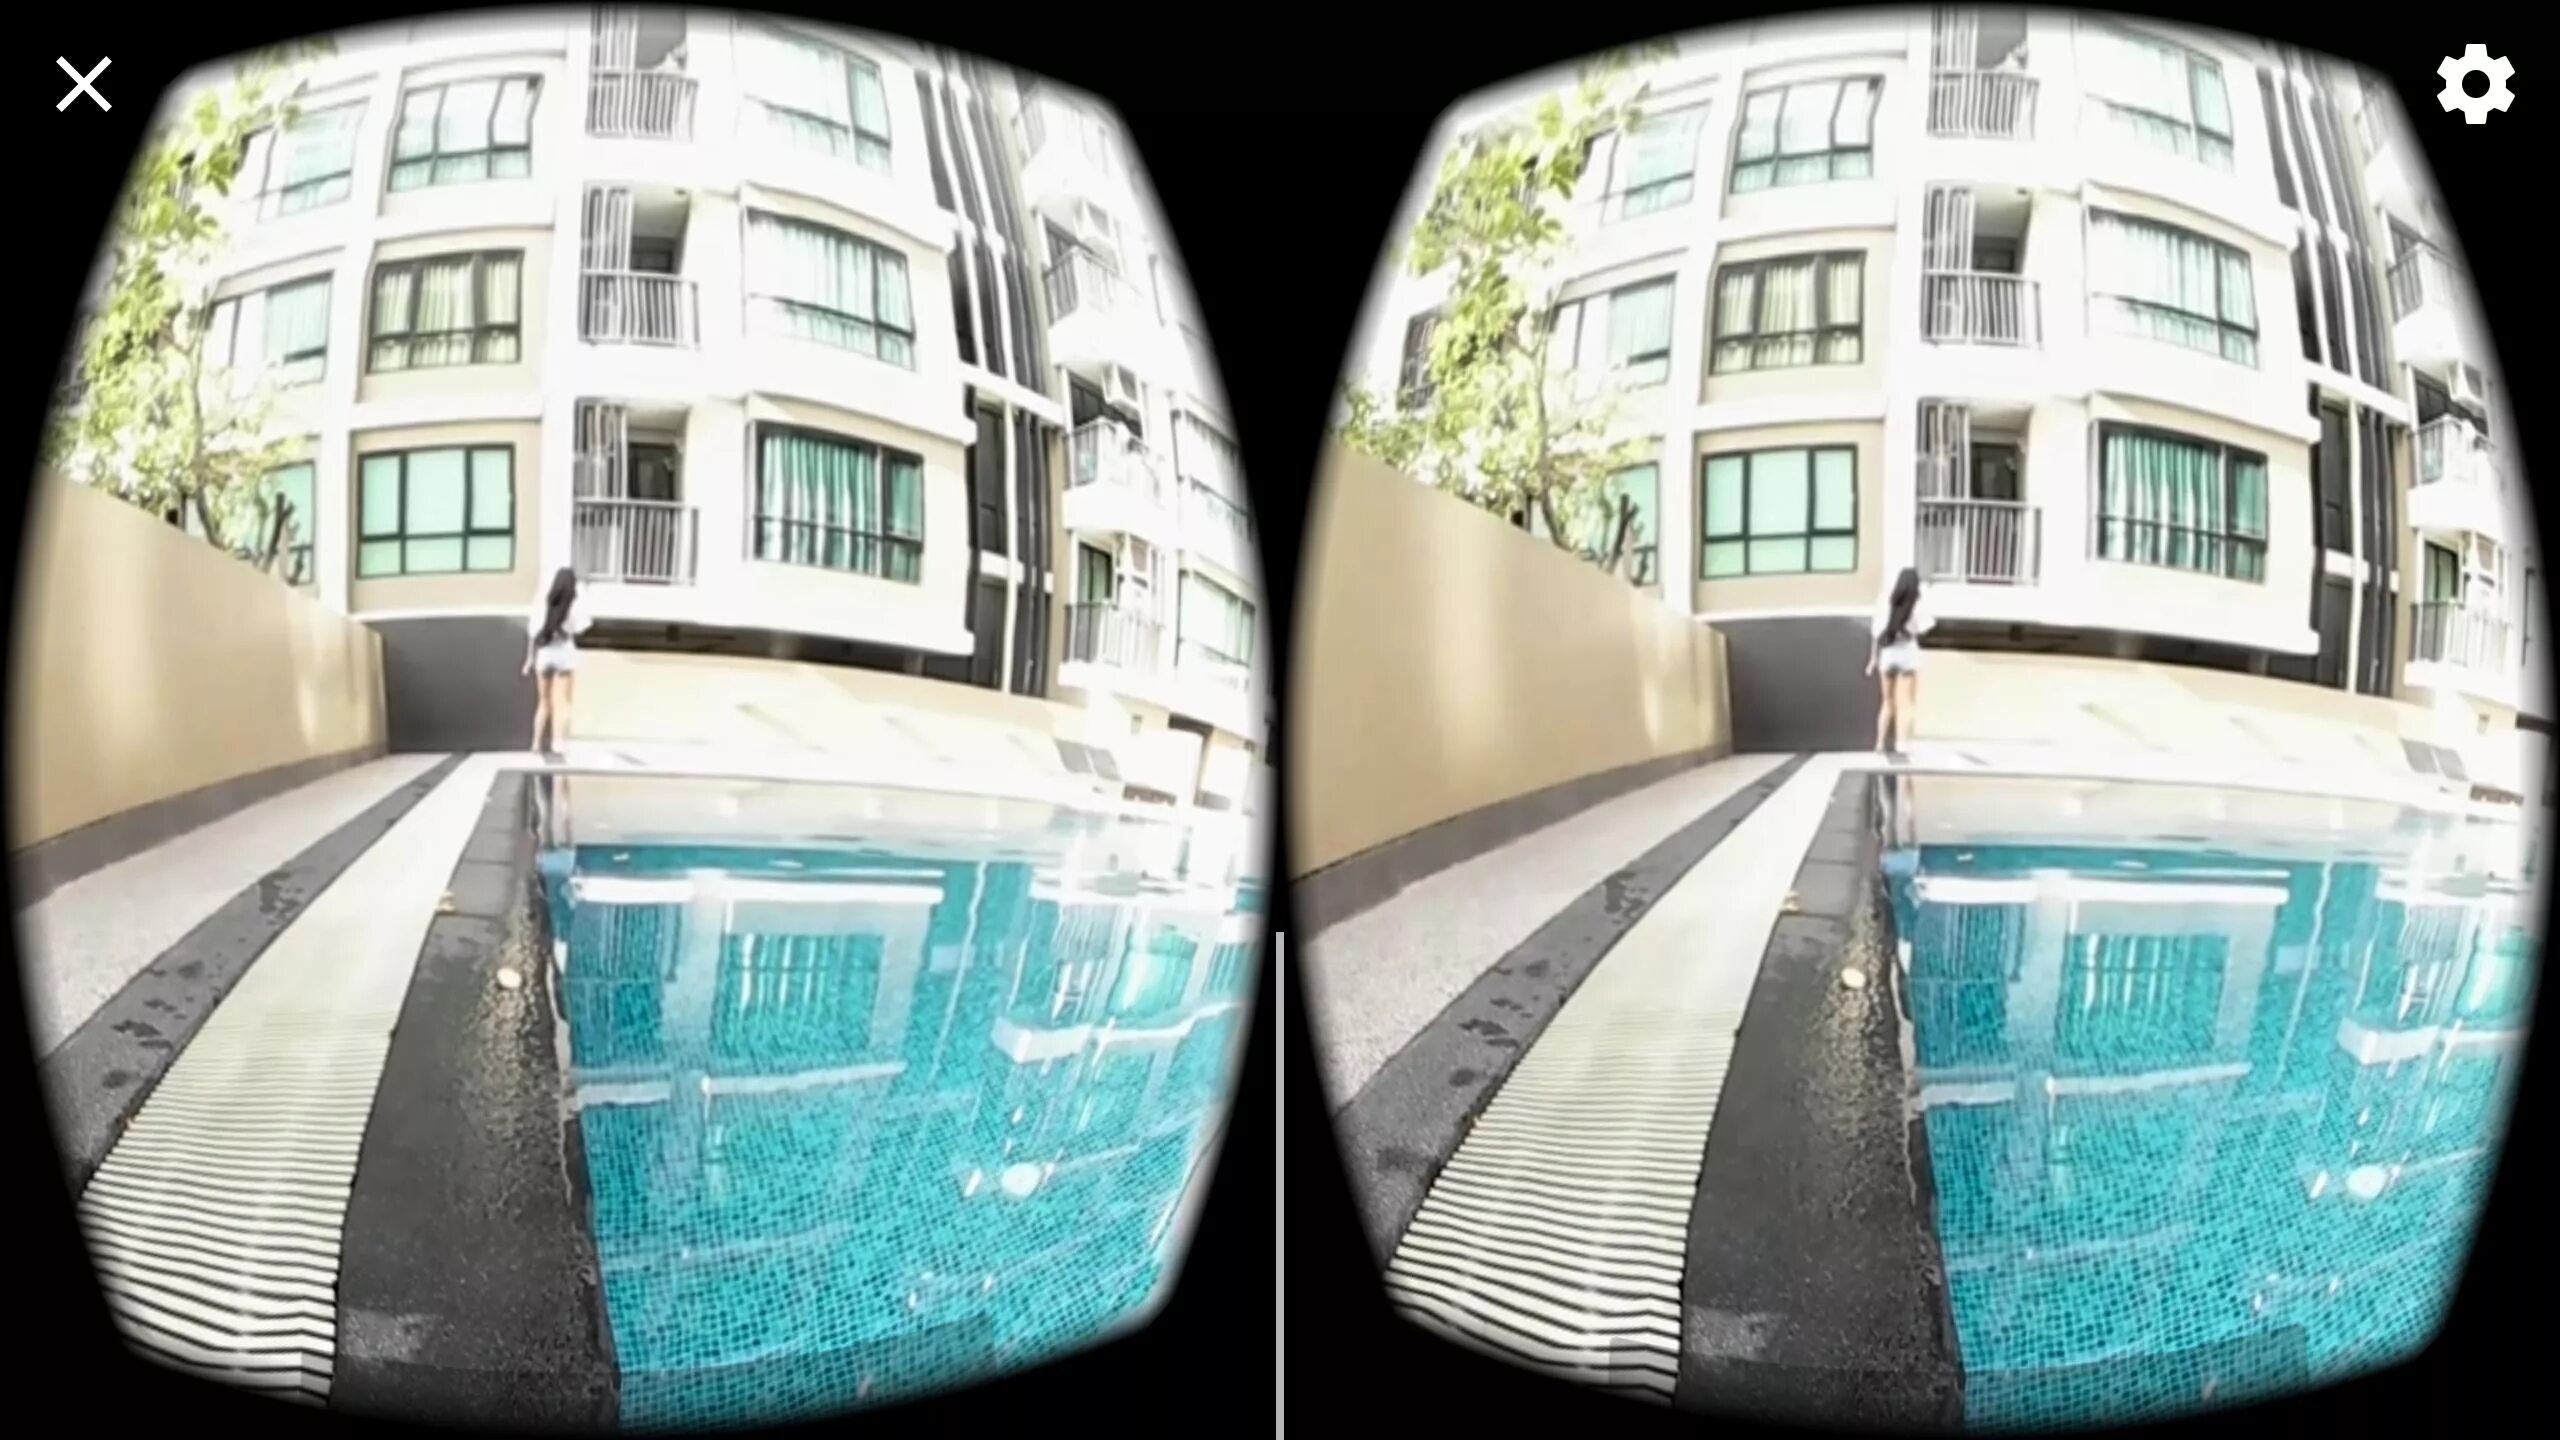 Rush vr. Изображения в 360 для VR. VR 360 two модель t-0. VR картинки высокого разрешения. Авалон 360 vs холодильник-.